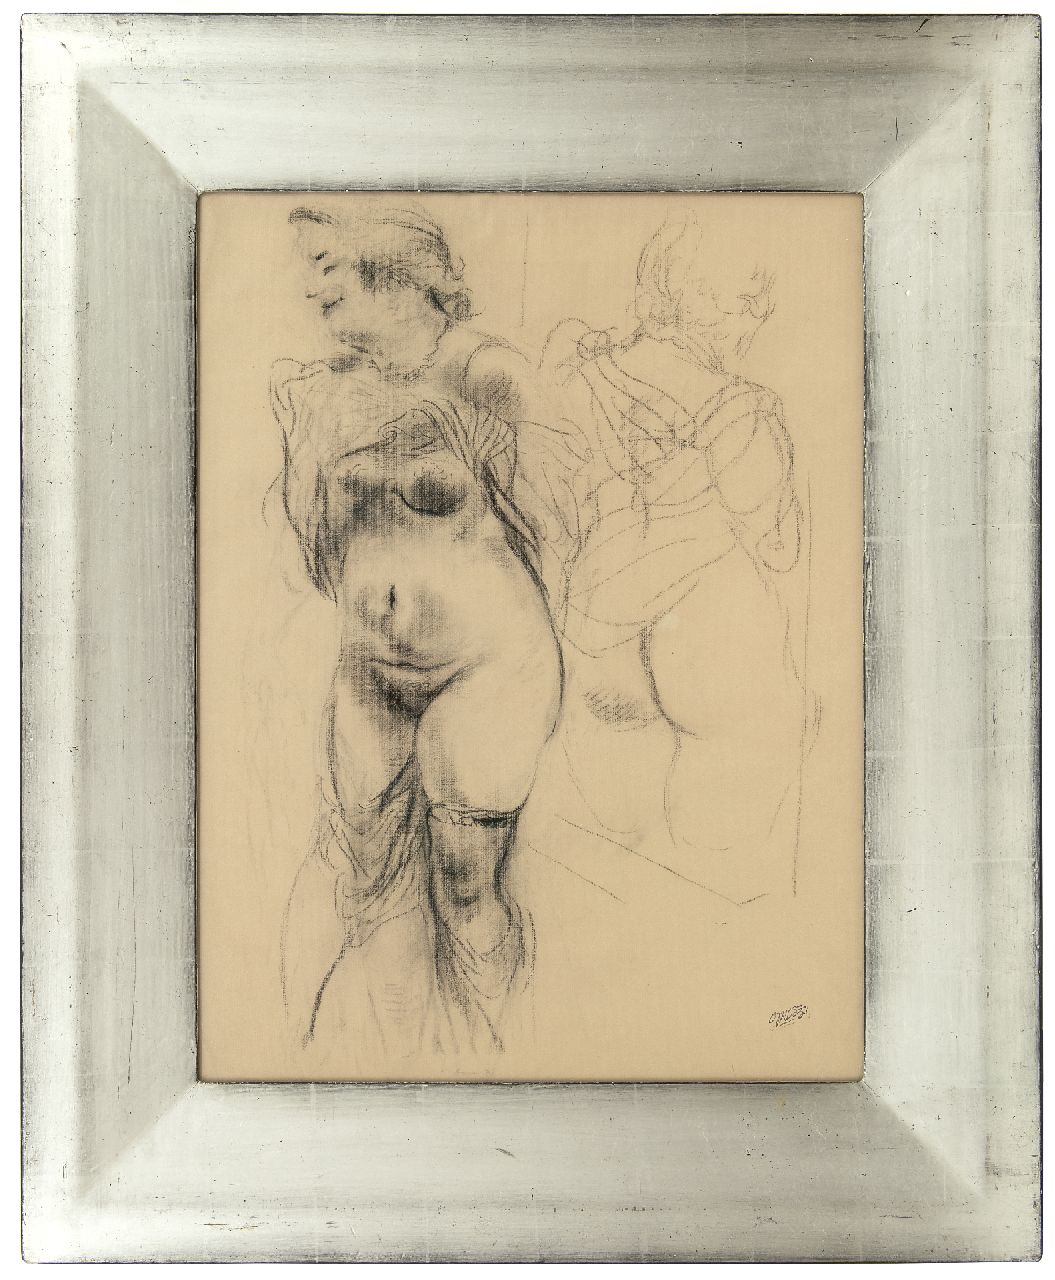 Grosz G.  | George 'Georg' Grosz, Naakt met spiegelbeeld, houtskool op papier 62,0 x 47,0 cm, gesigneerd rechtsonder met naamstempel en te dateren 1939